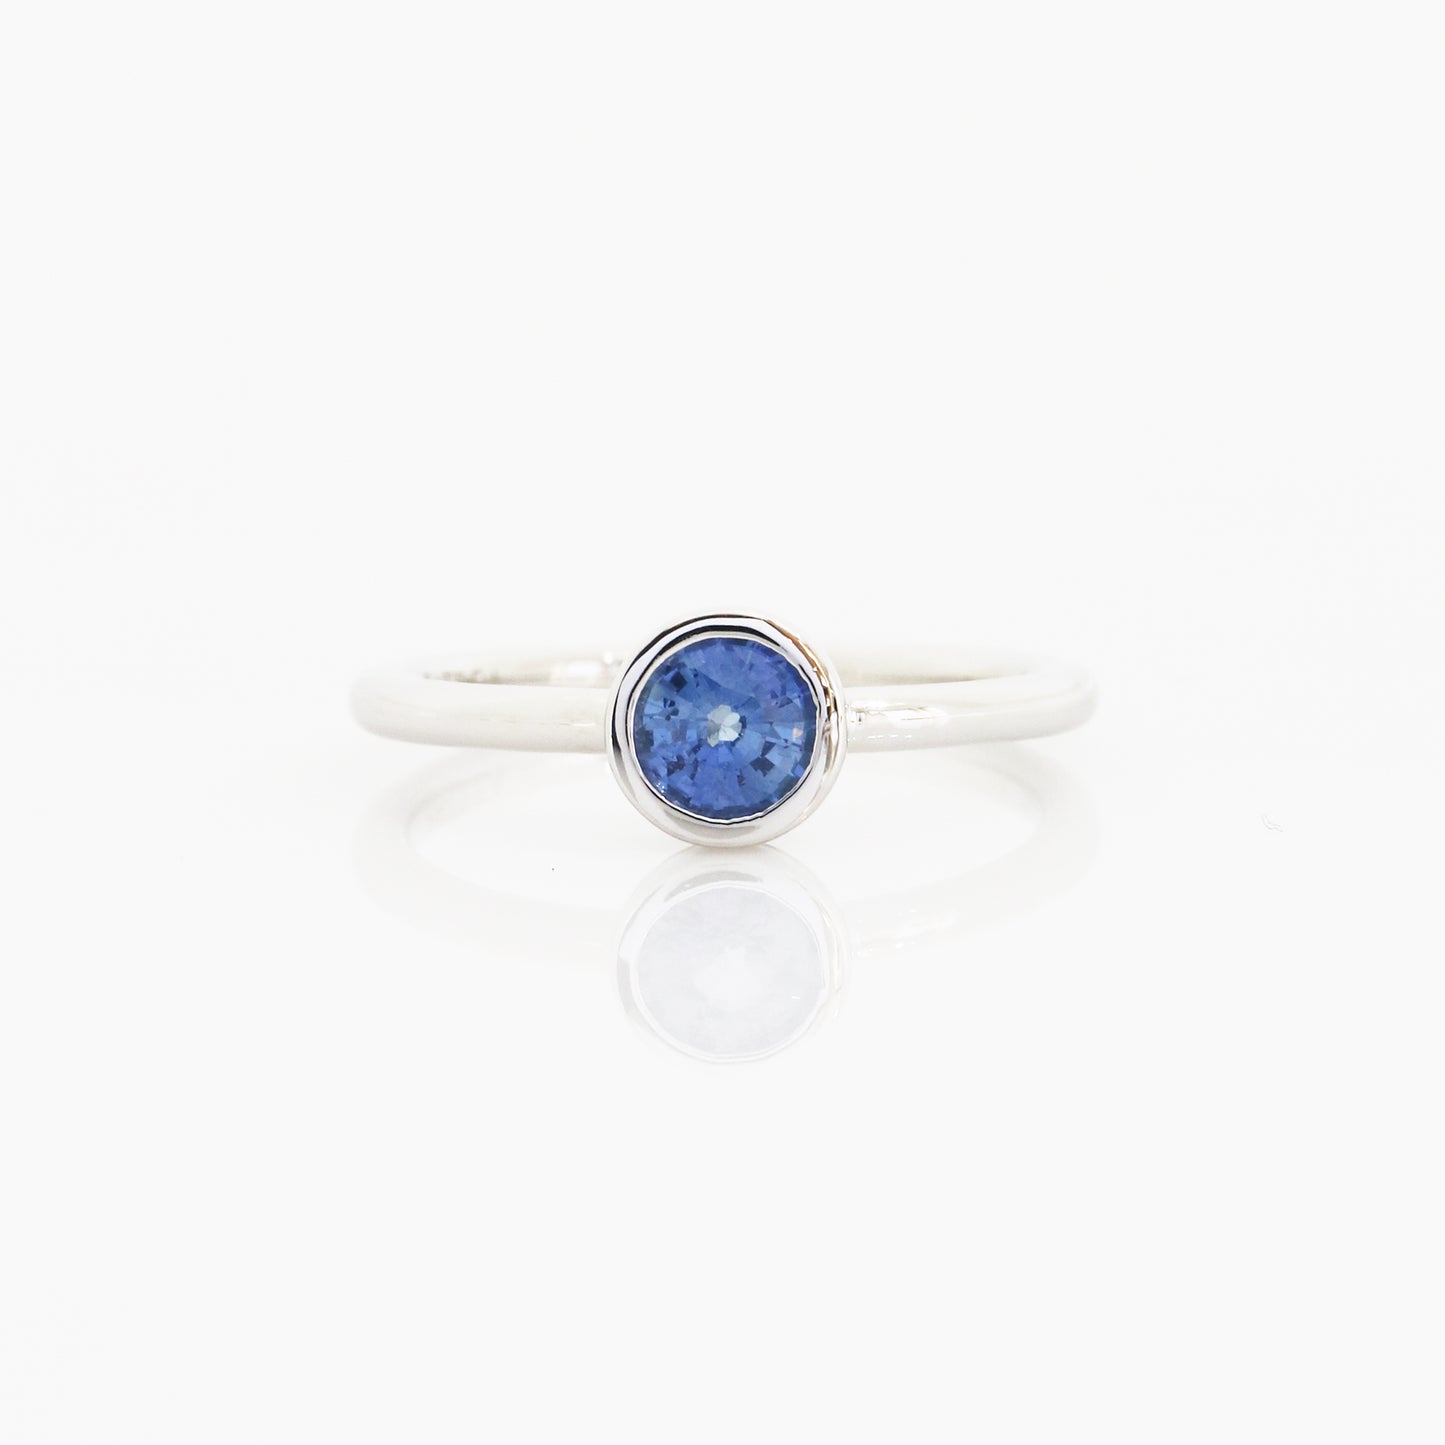 18k白金包邊鑲藍寶石戒指 18k White Gold Bezel-Set Sapphire Ring